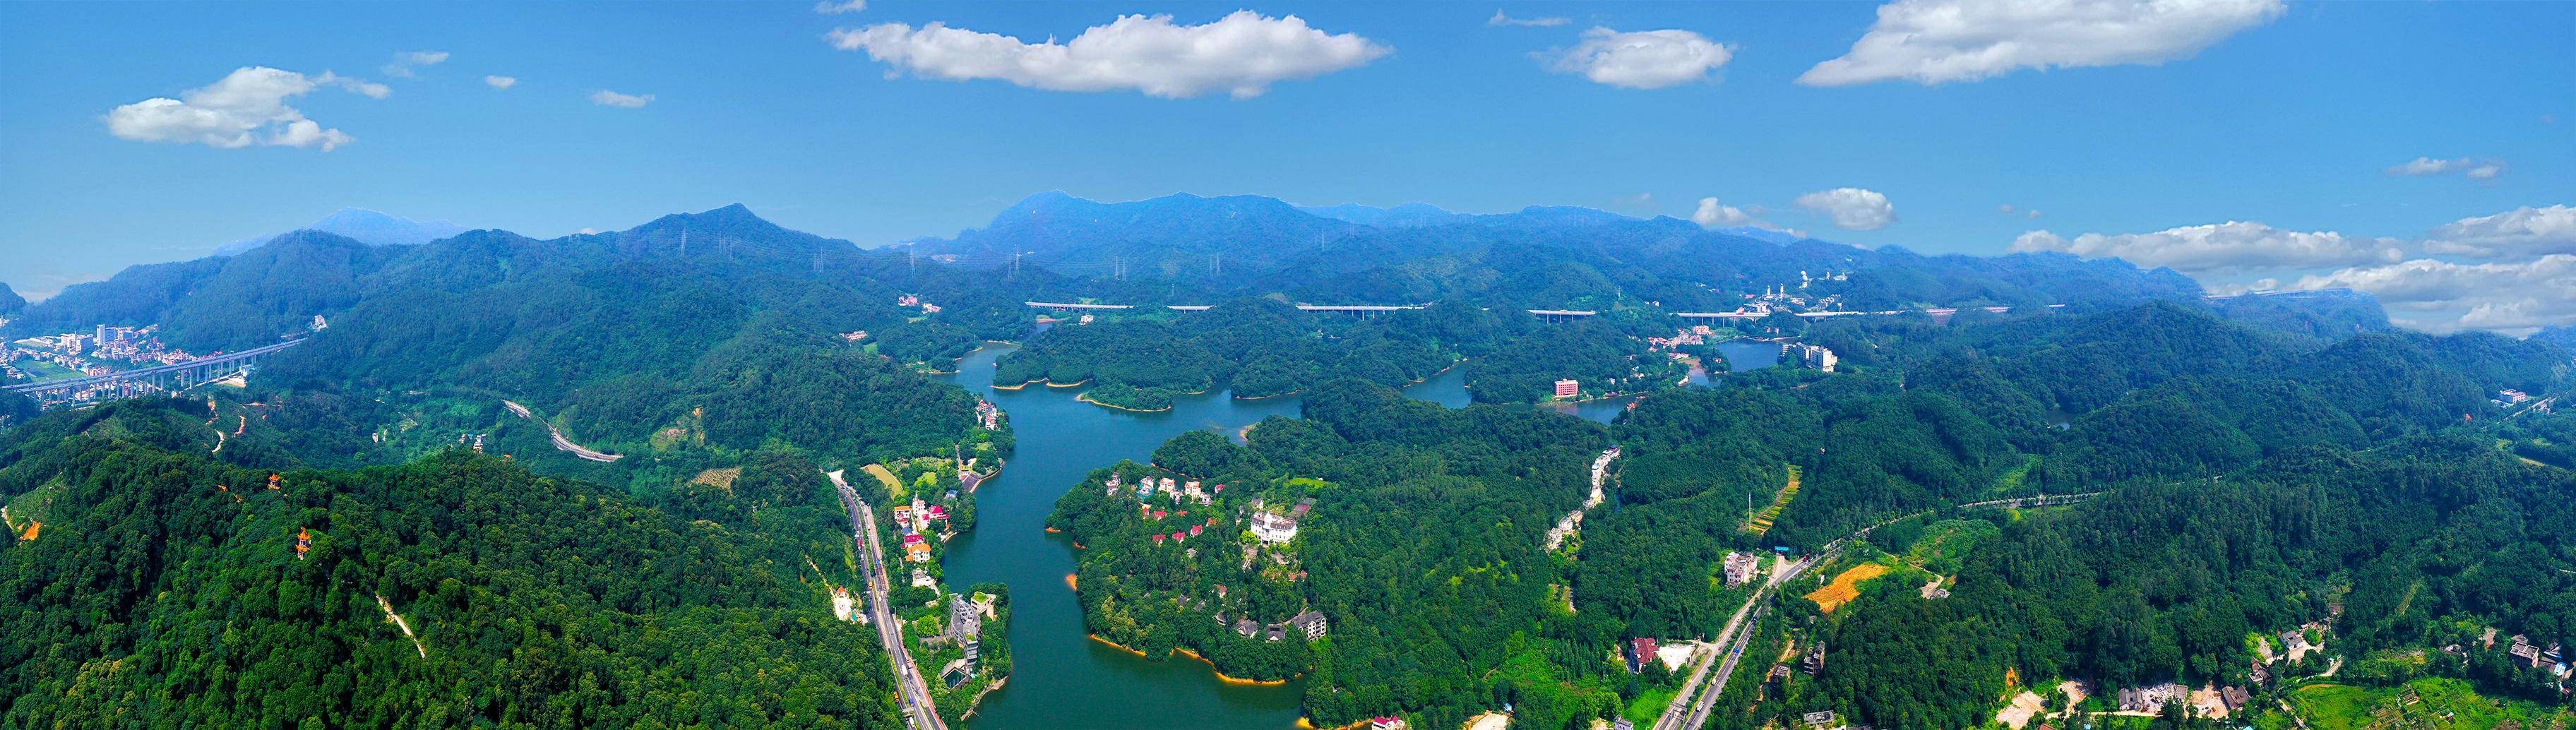 广州 天麓湖图片